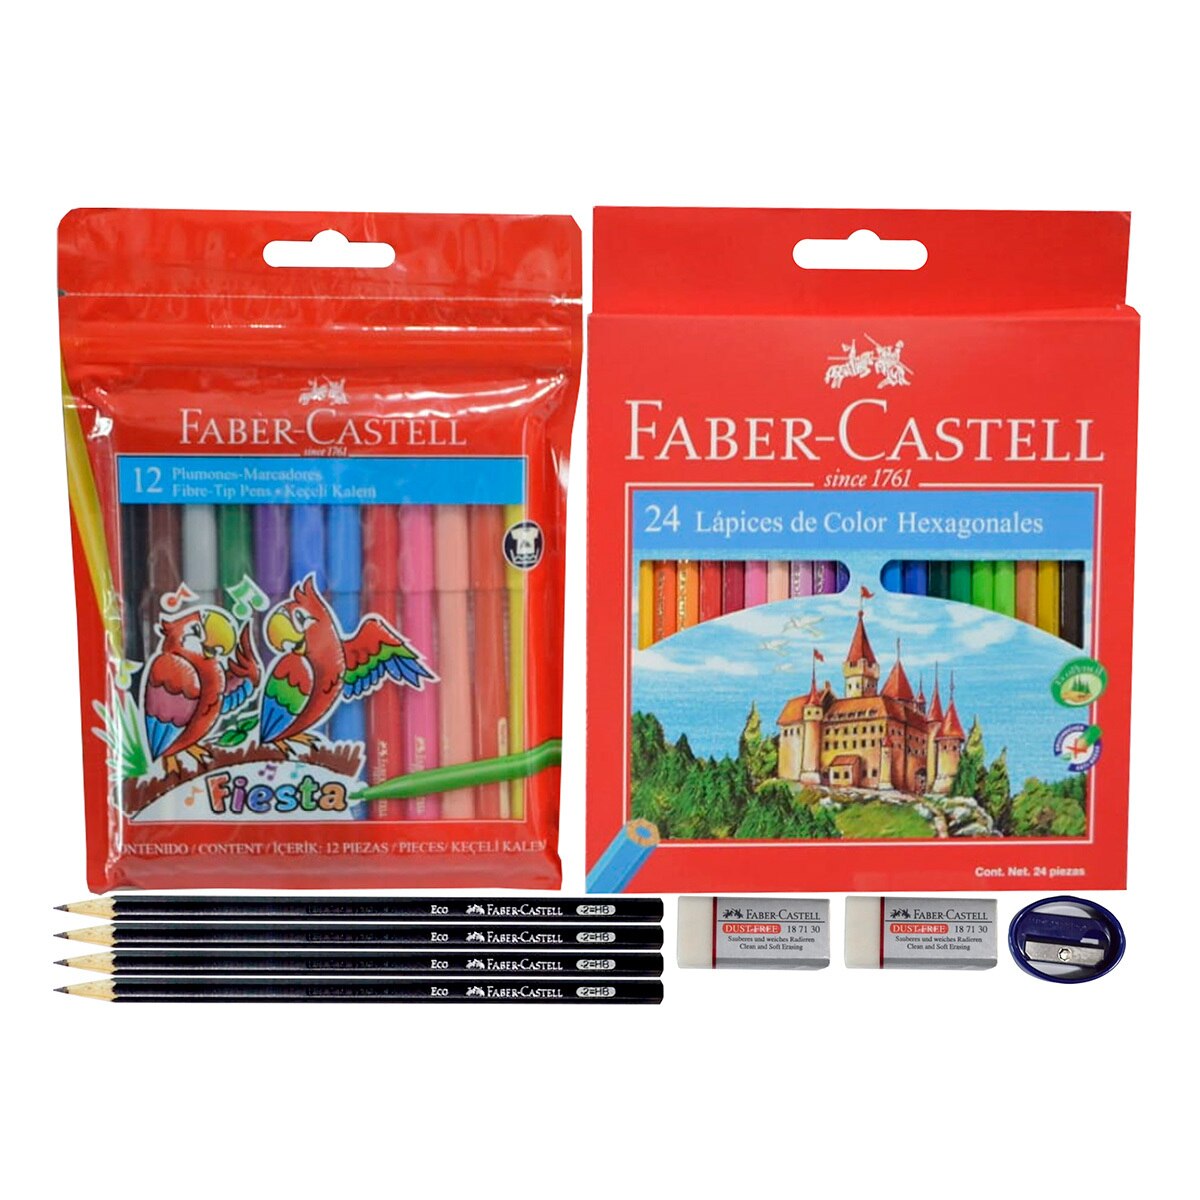 Faber-Castell, Paquete Escolar con 9 Artículos